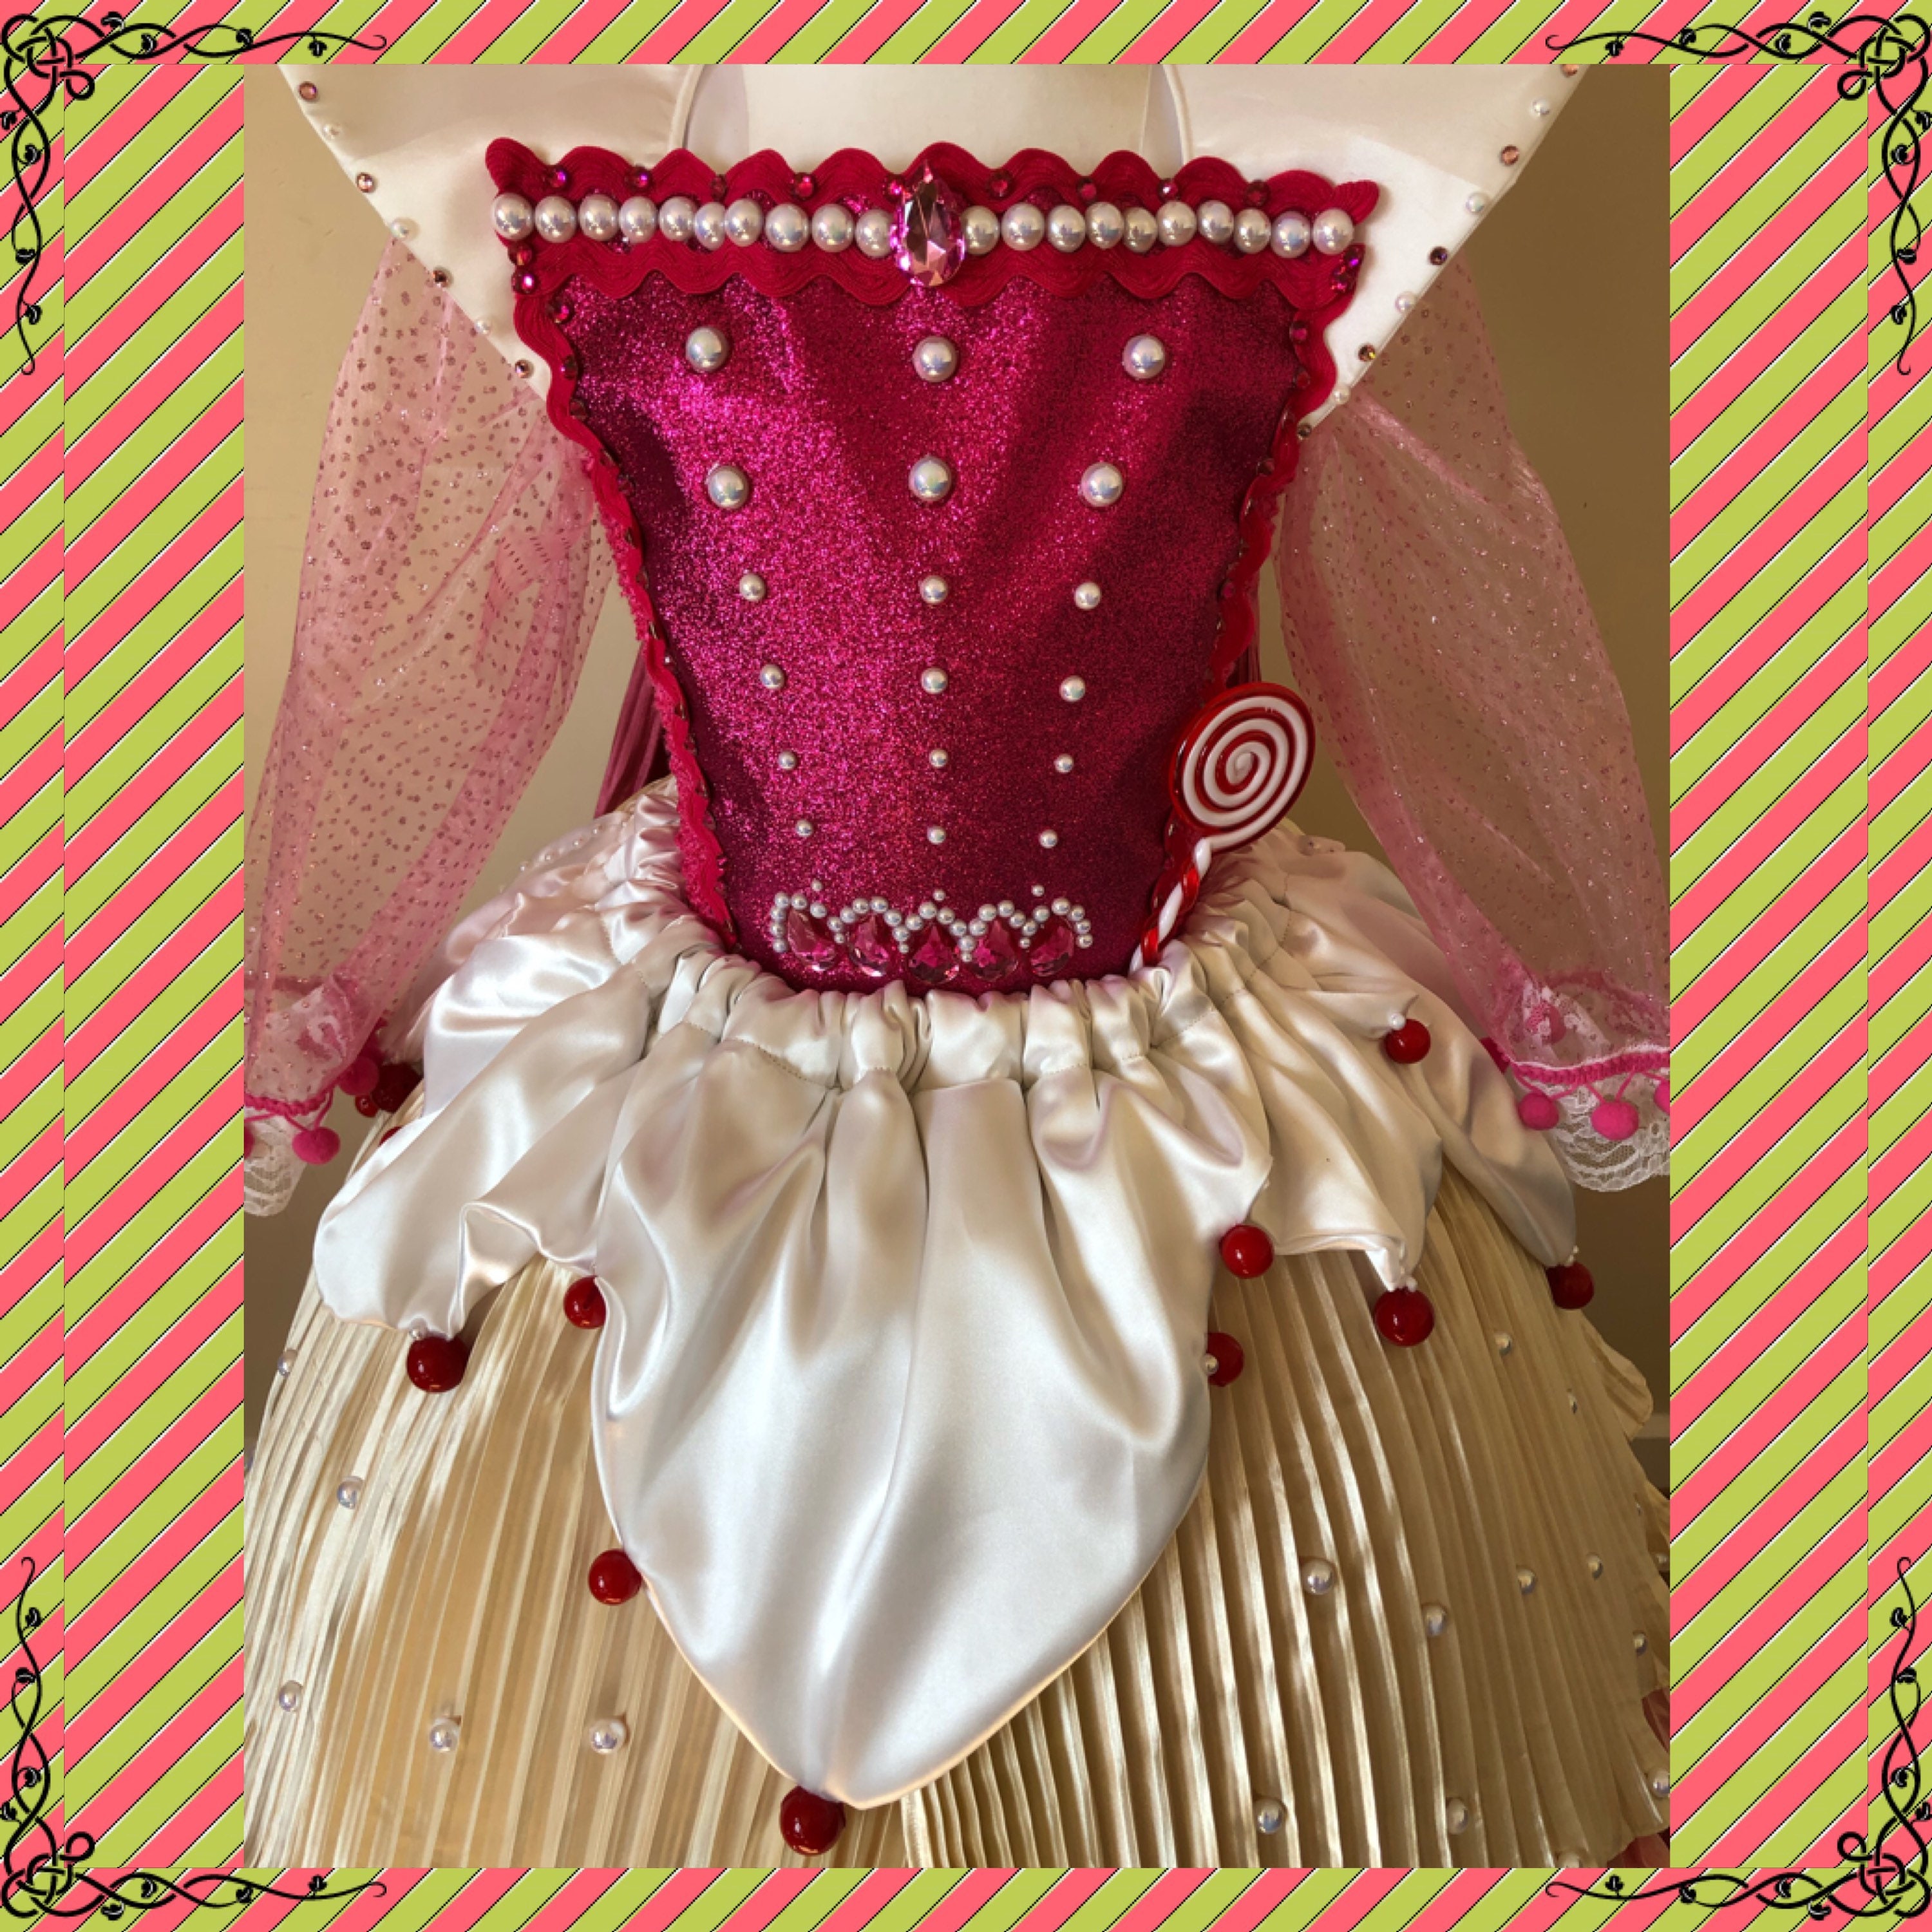 Vanellope Von Schweetz Costume / Cosplay by PrincessDitto on